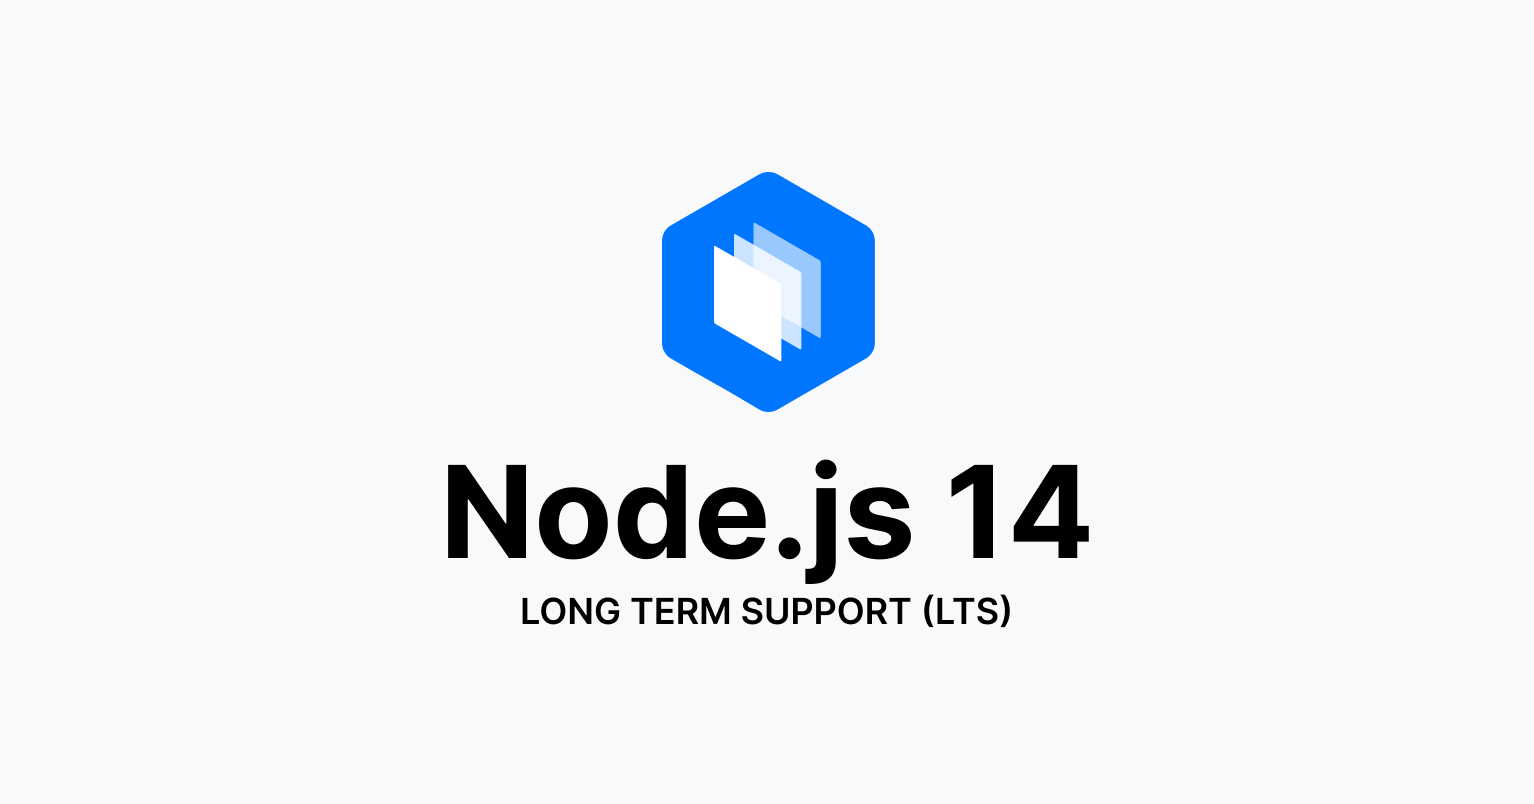 Node.js 14 LTS